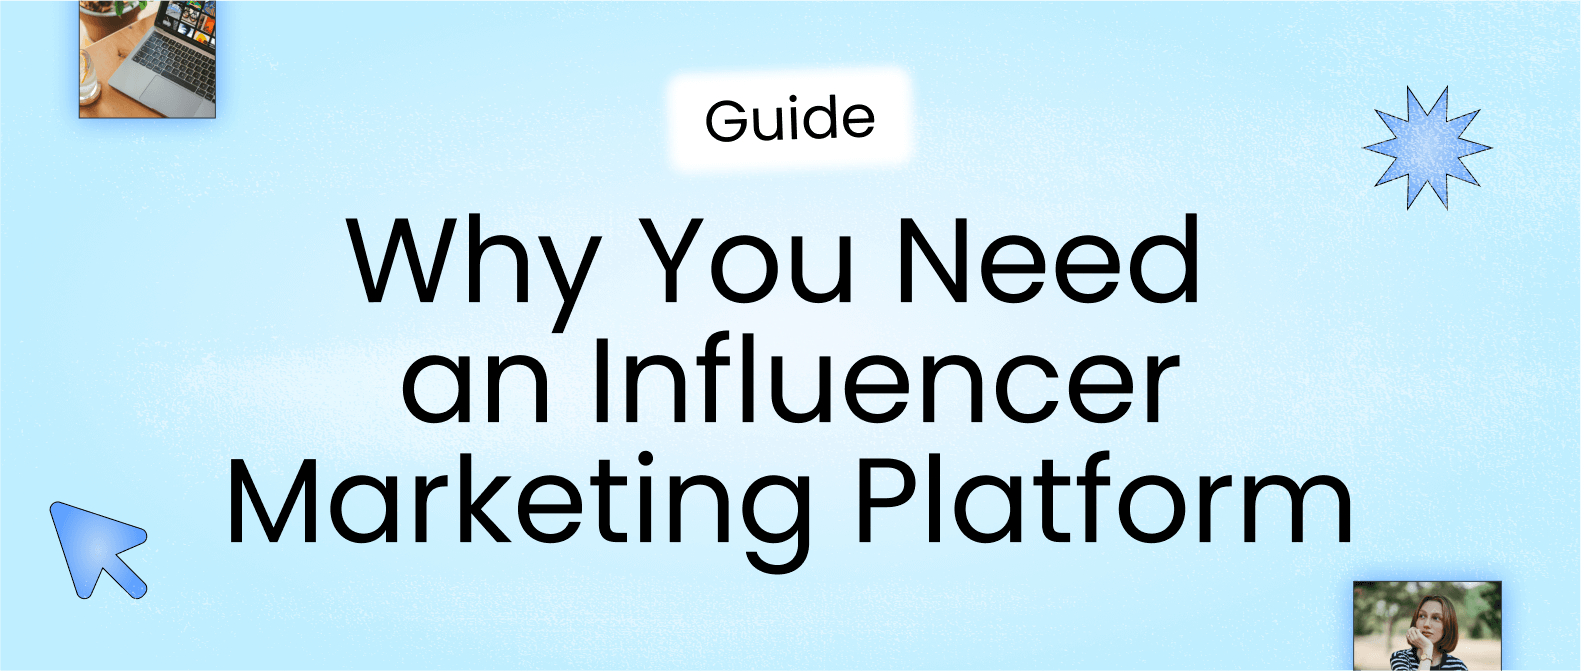 header image for later’s influencer marketing platform guide